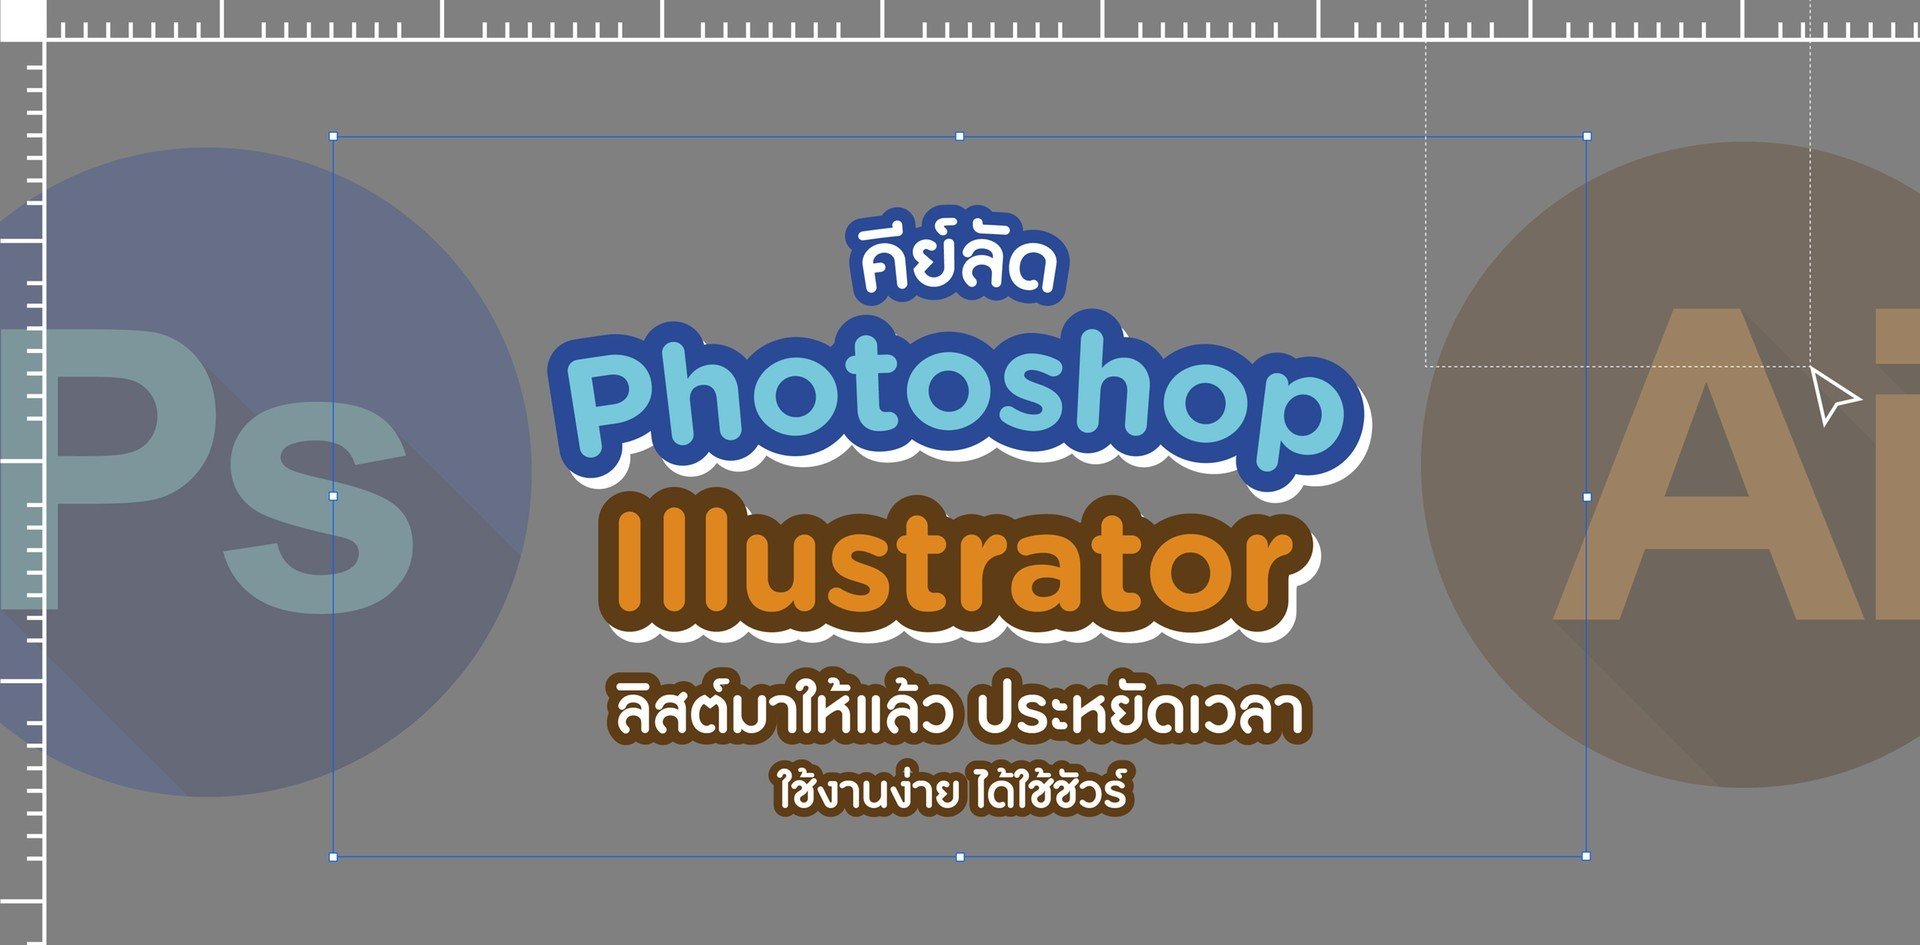 รวมคีย์ลัด Photoshop / Lilustrator ประหยัดเวลา ใช้งานง่าย ได้ใช้ชัวร์!